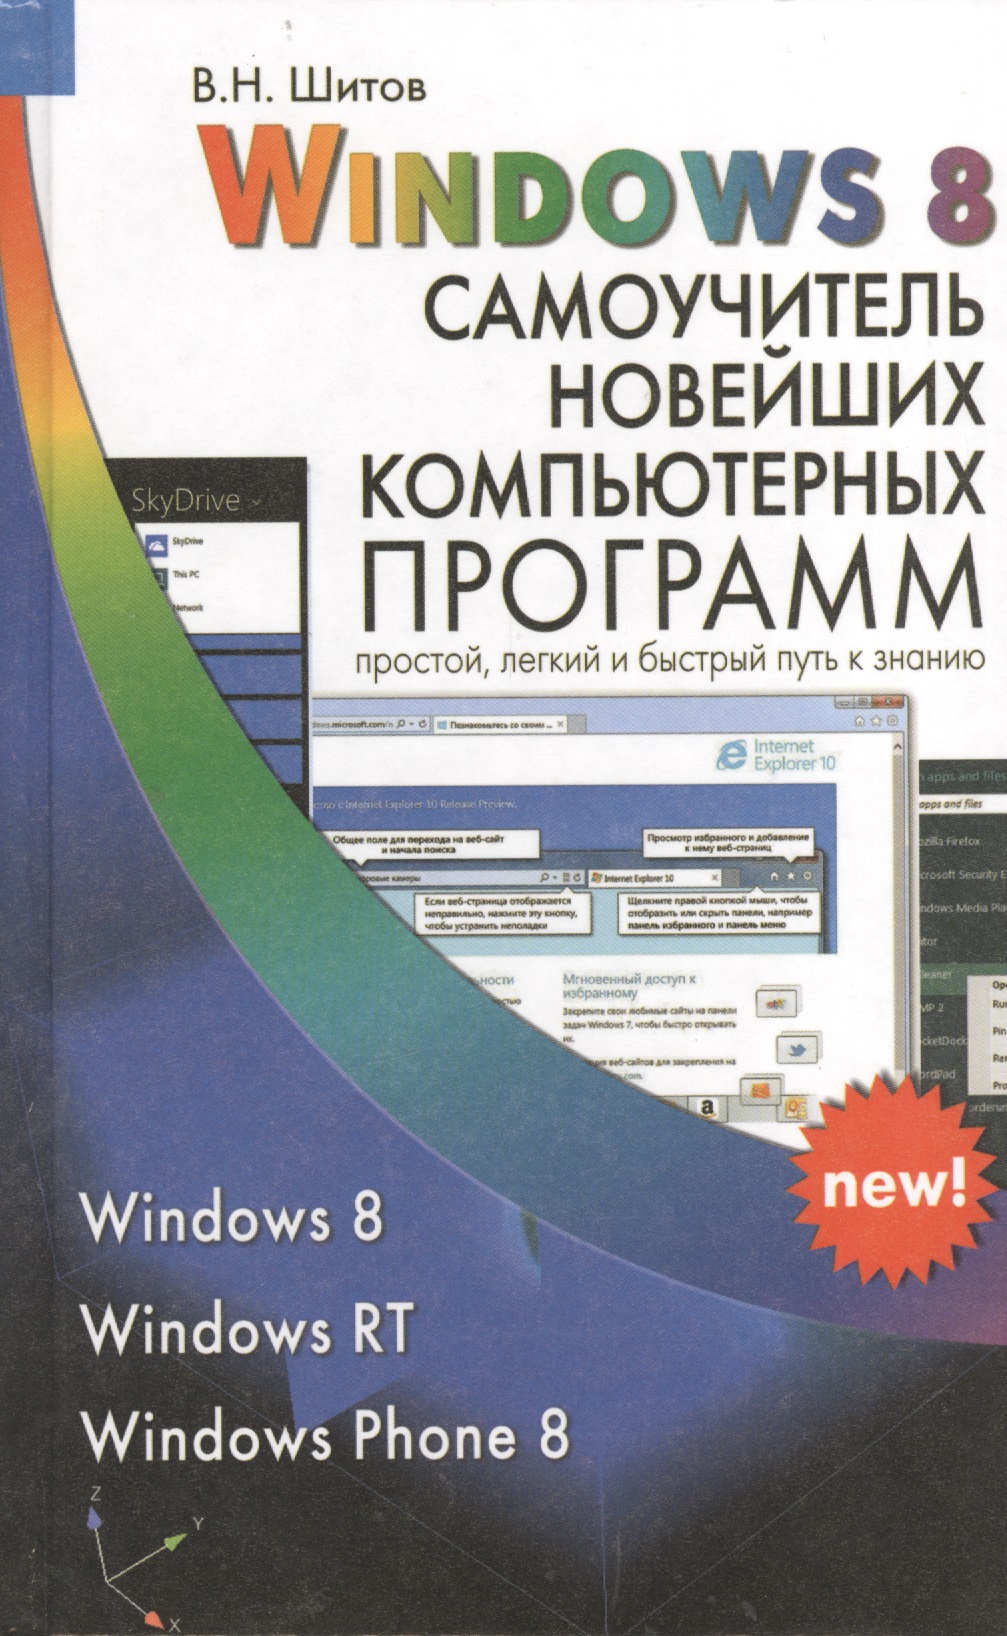 Шитов Виктор Николаевич Windows 8 Самоучитель новейших компьютерных программ (Шитов) шитов виктор николаевич photoshop шаг за шагом